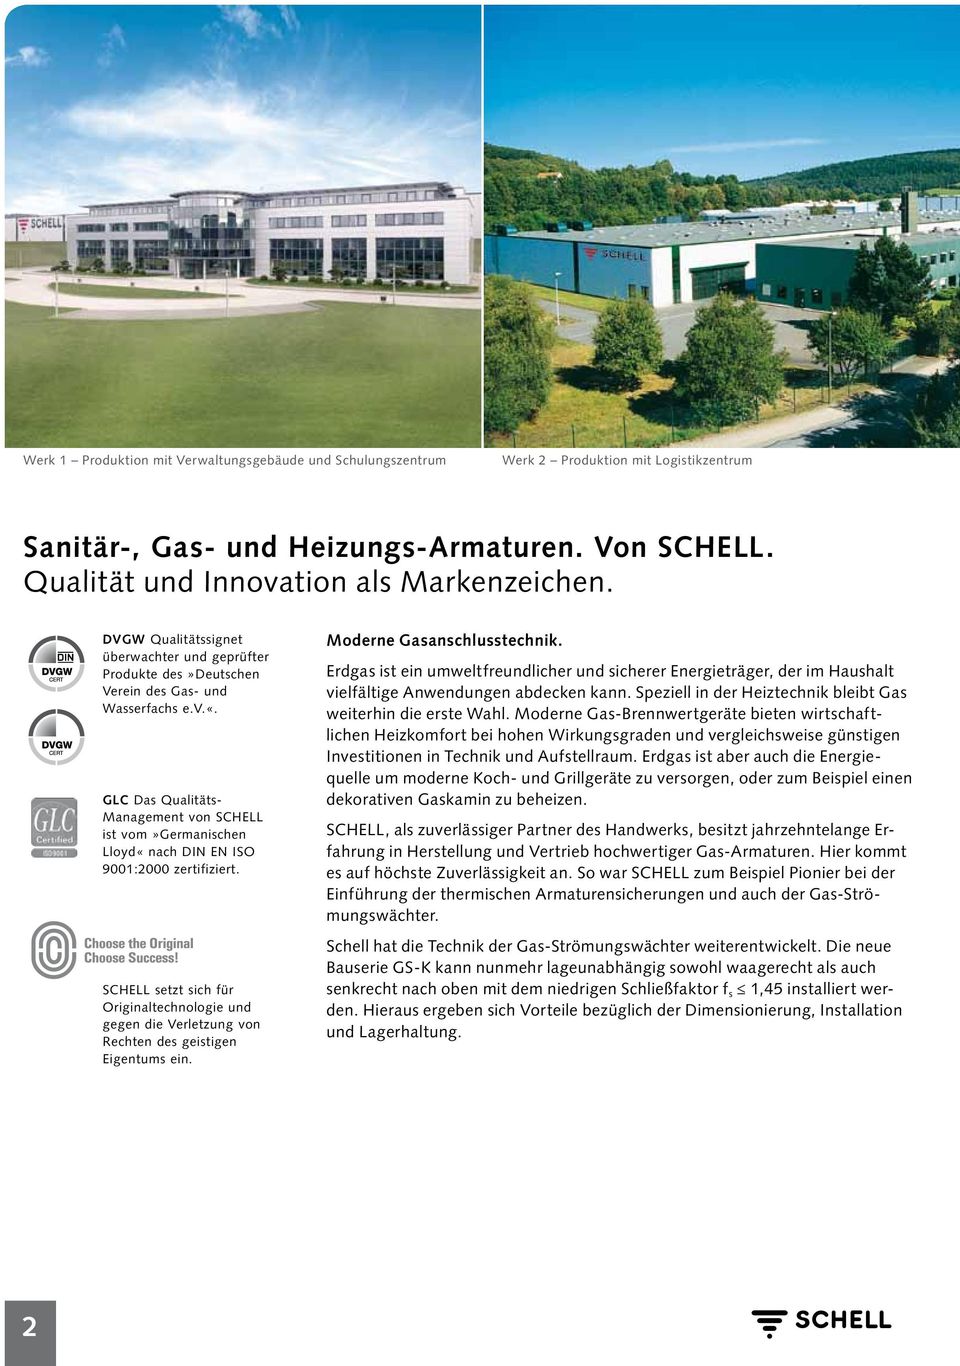 GLC Das Qualitäts- Management von SCHELL ist vom»germanischen Lloyd«nach DIN EN ISO 9001:2000 zertifiziert.